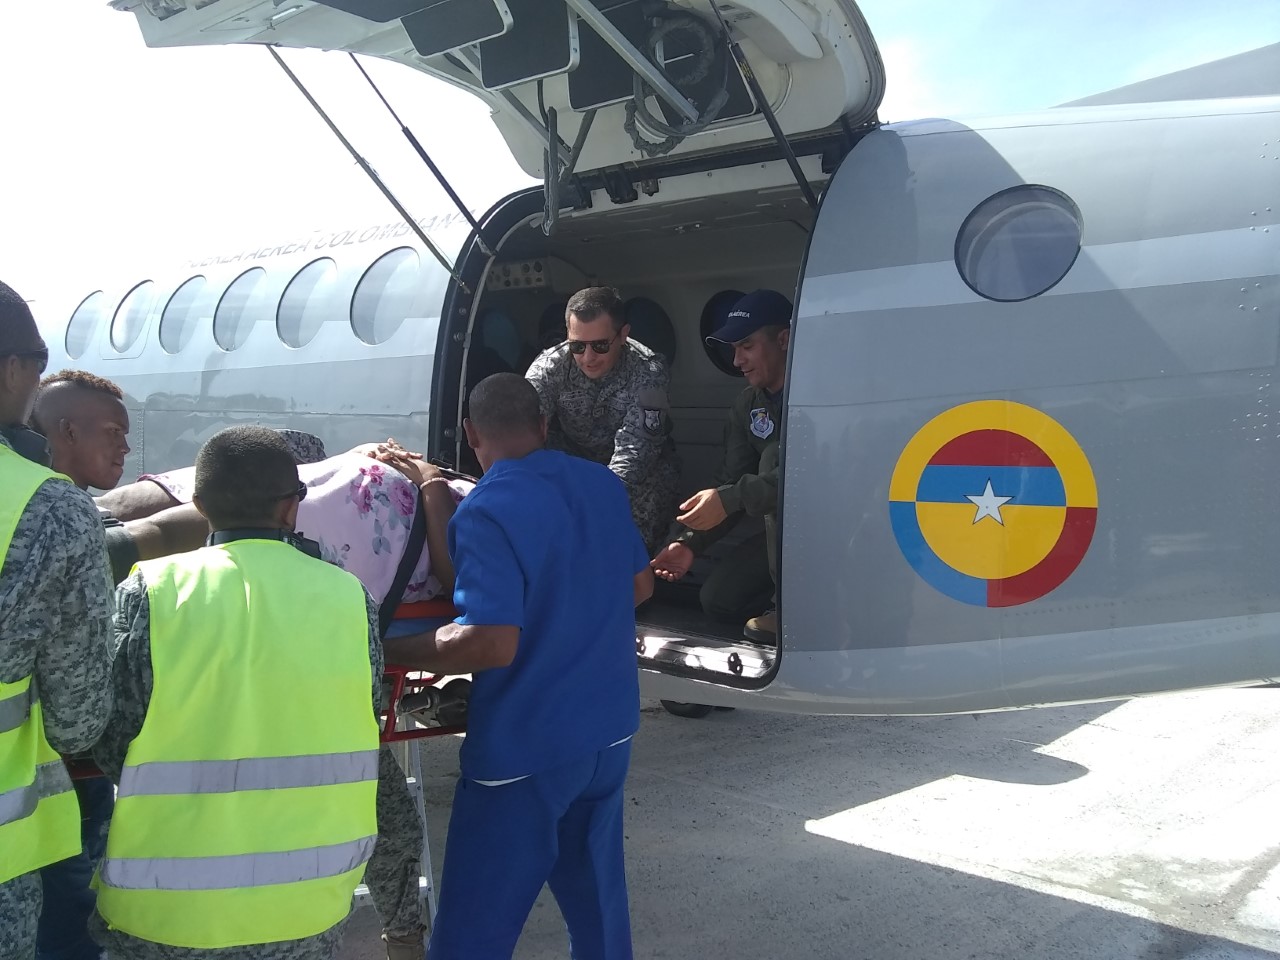 La Fuerza Aérea Colombiana traslada paciente en condición delicada a Barranquilla